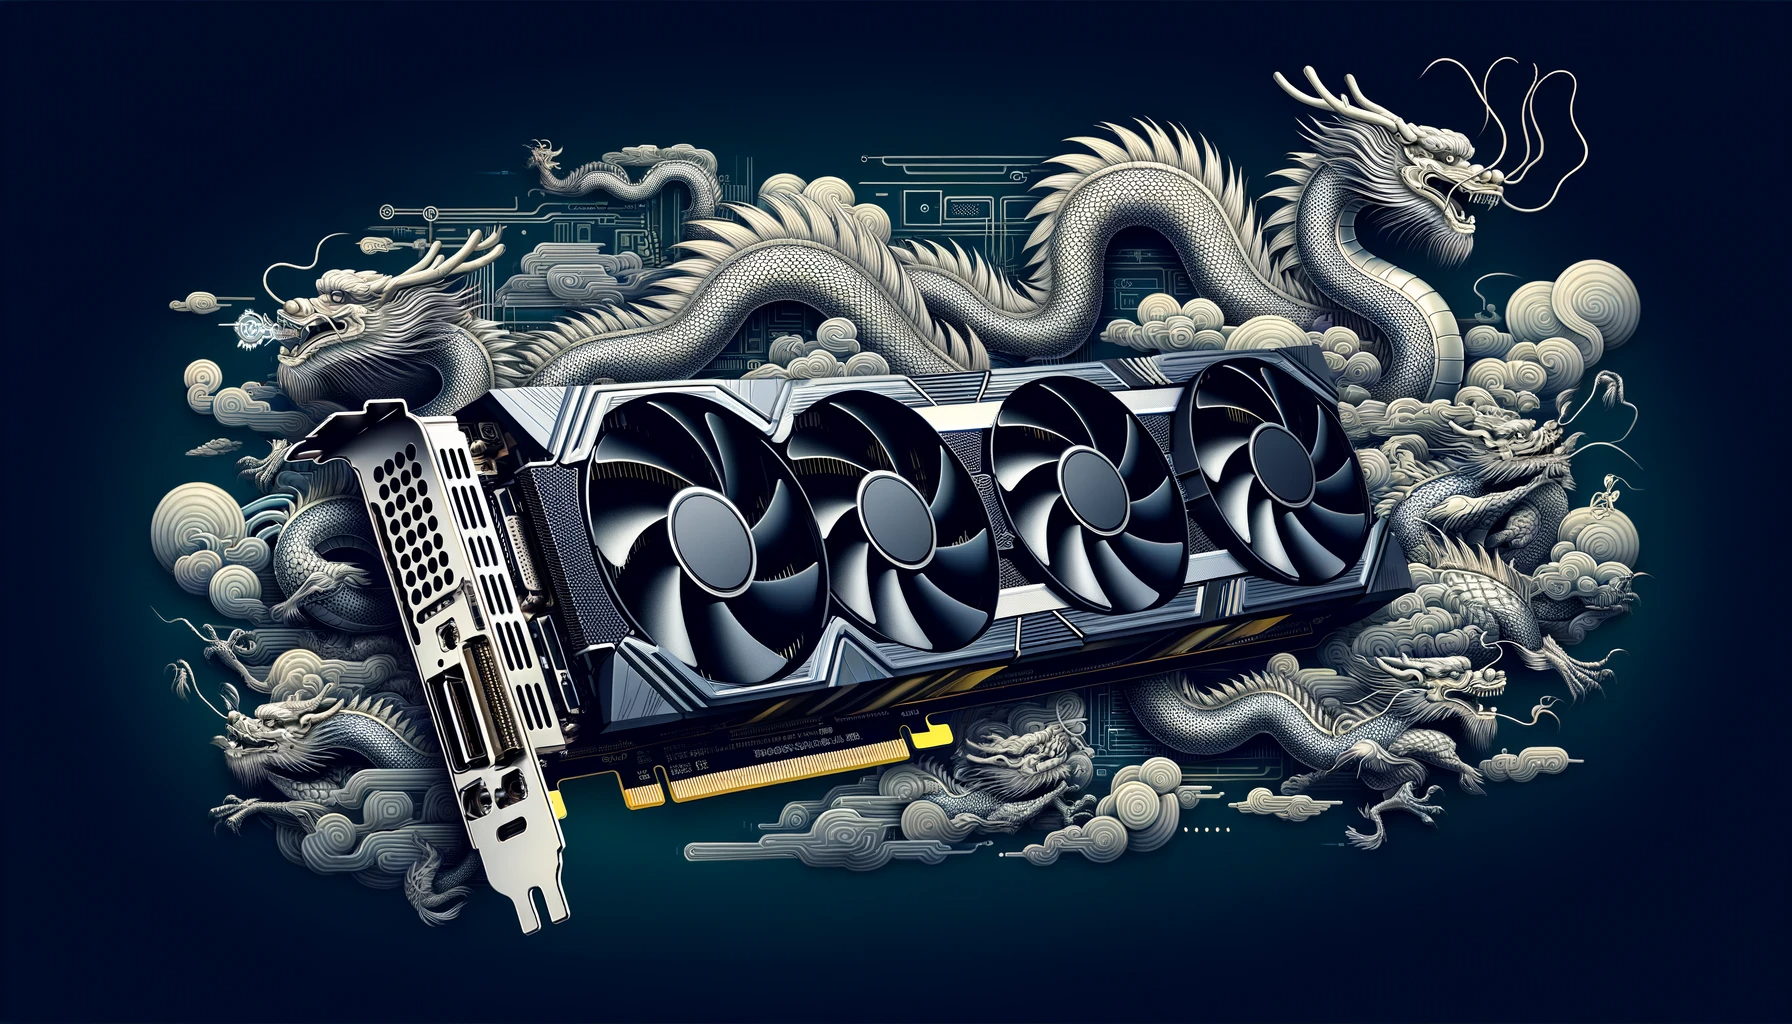 Nvidia Markteinführung des neuen KI-Chips für China verzögert sich